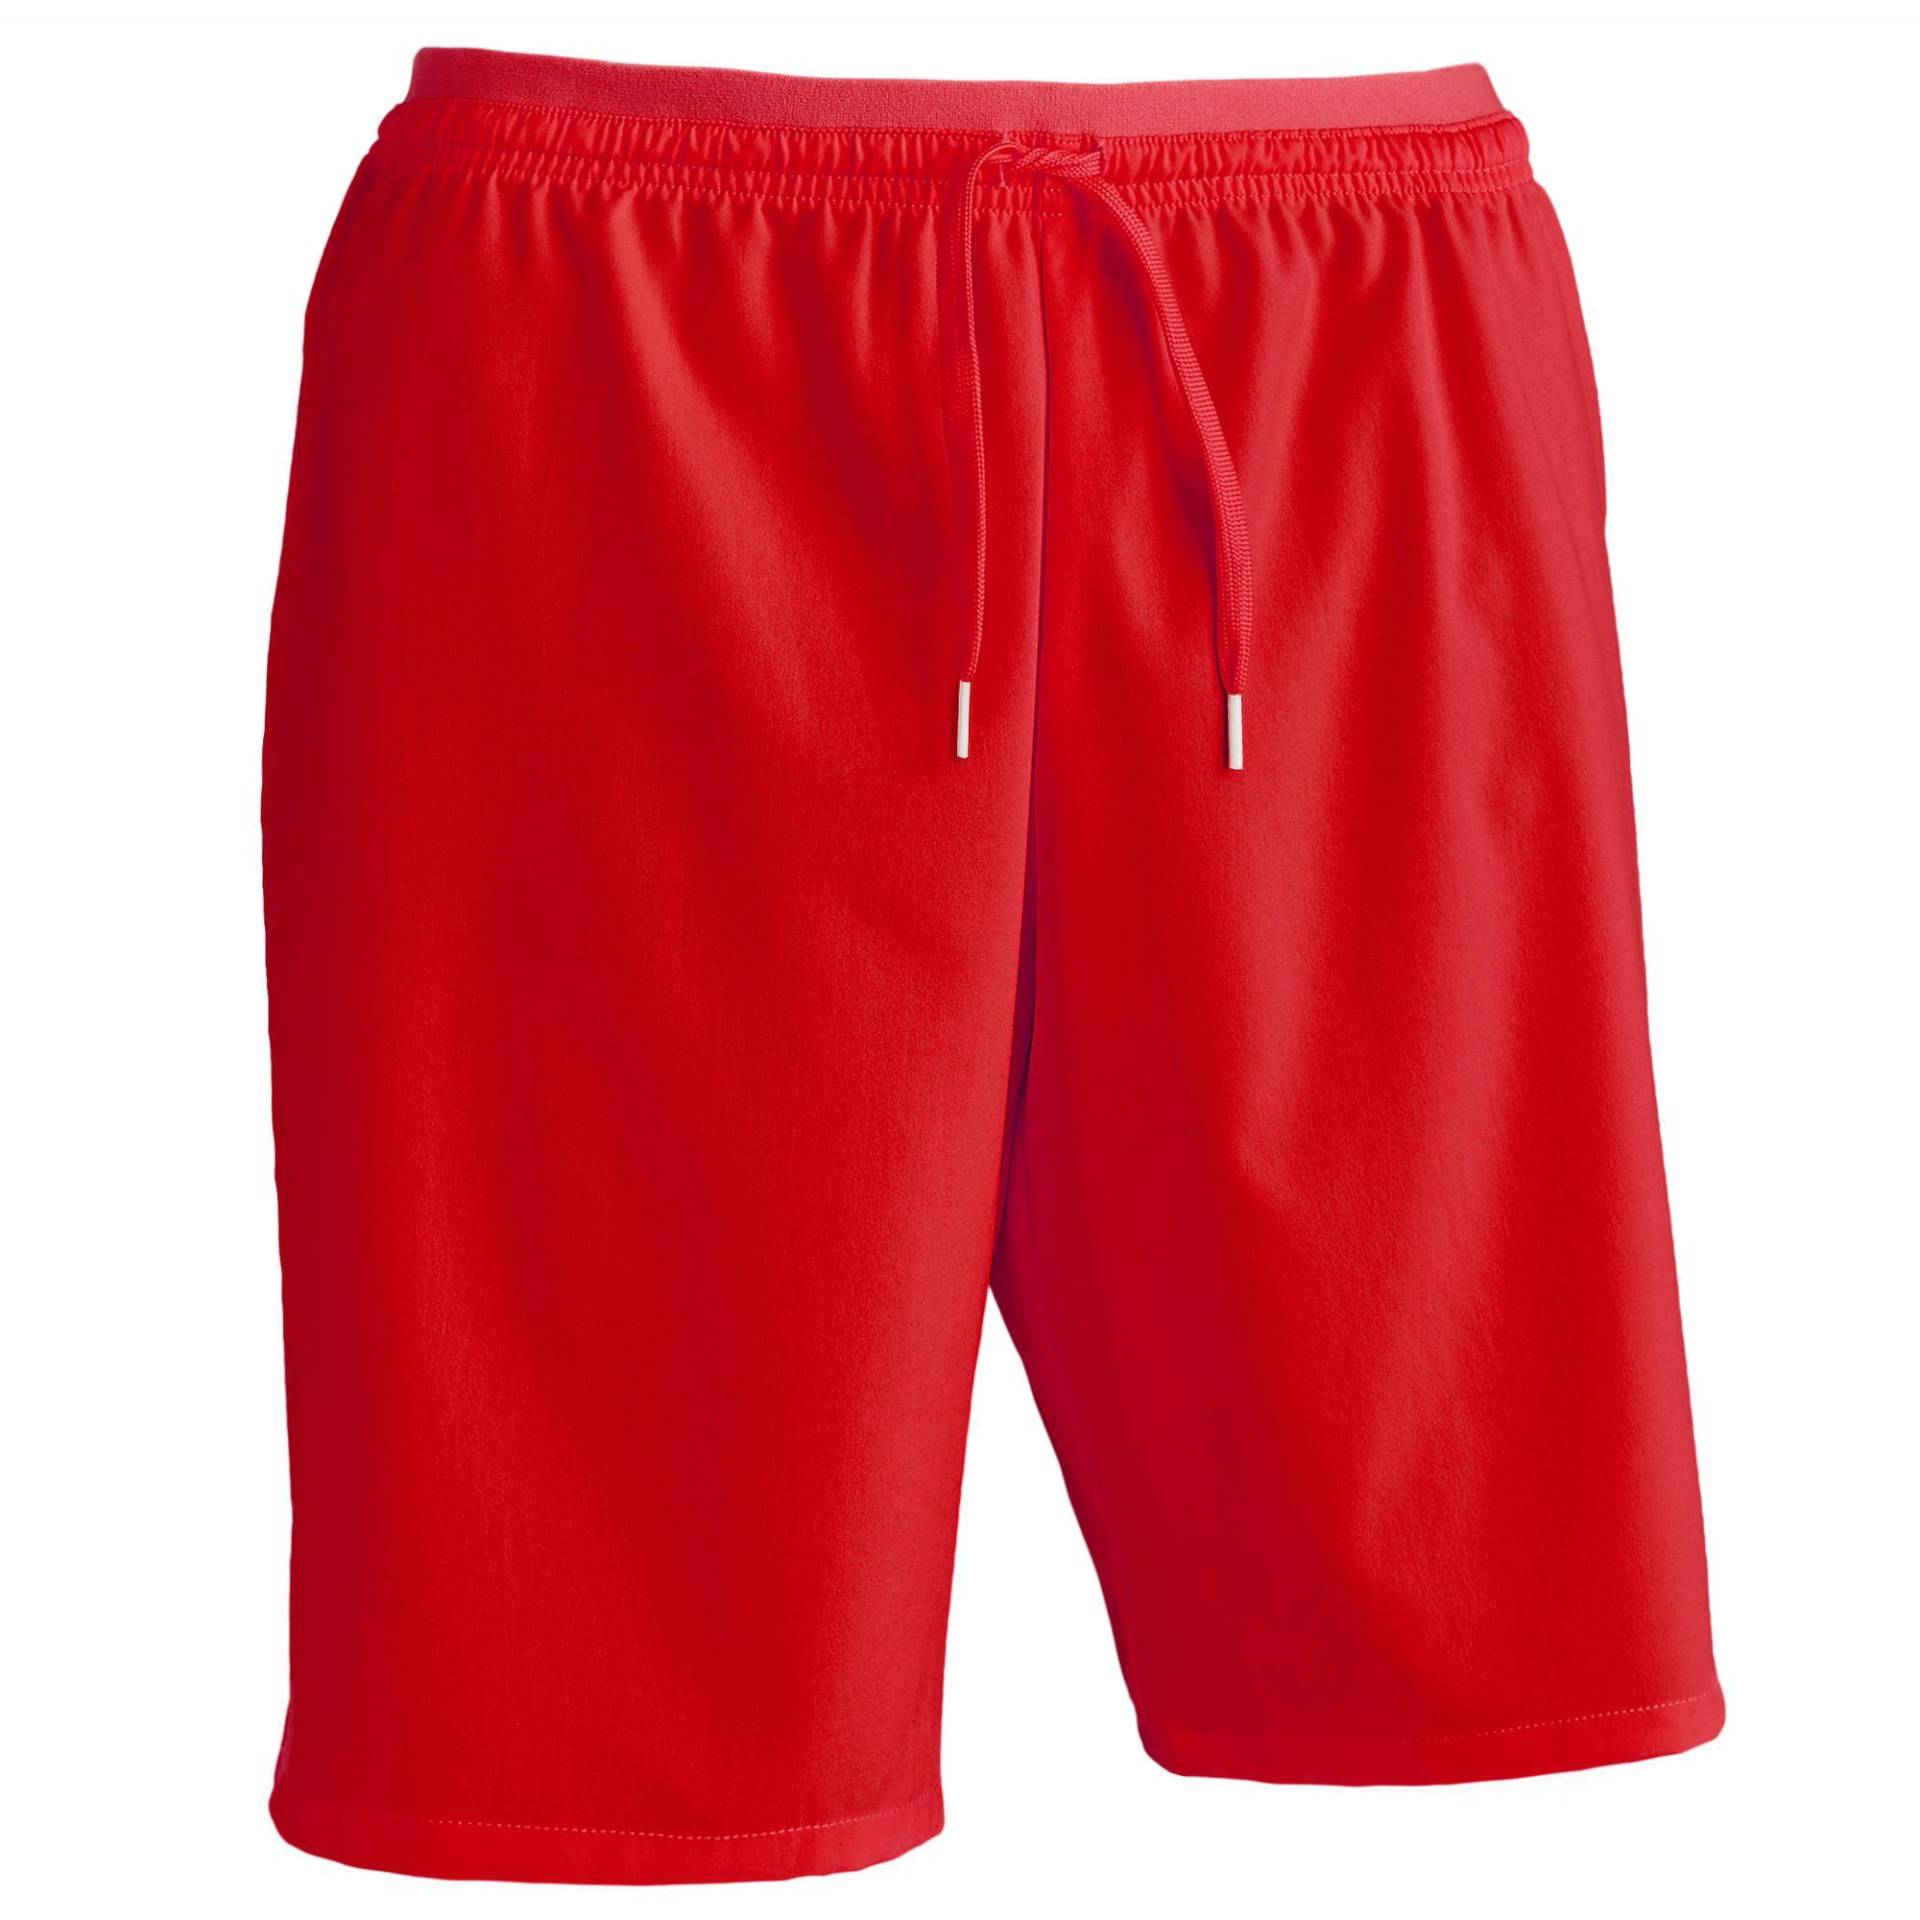 Damen/Herren Fussball Shorts Viralto rot von KIPSTA